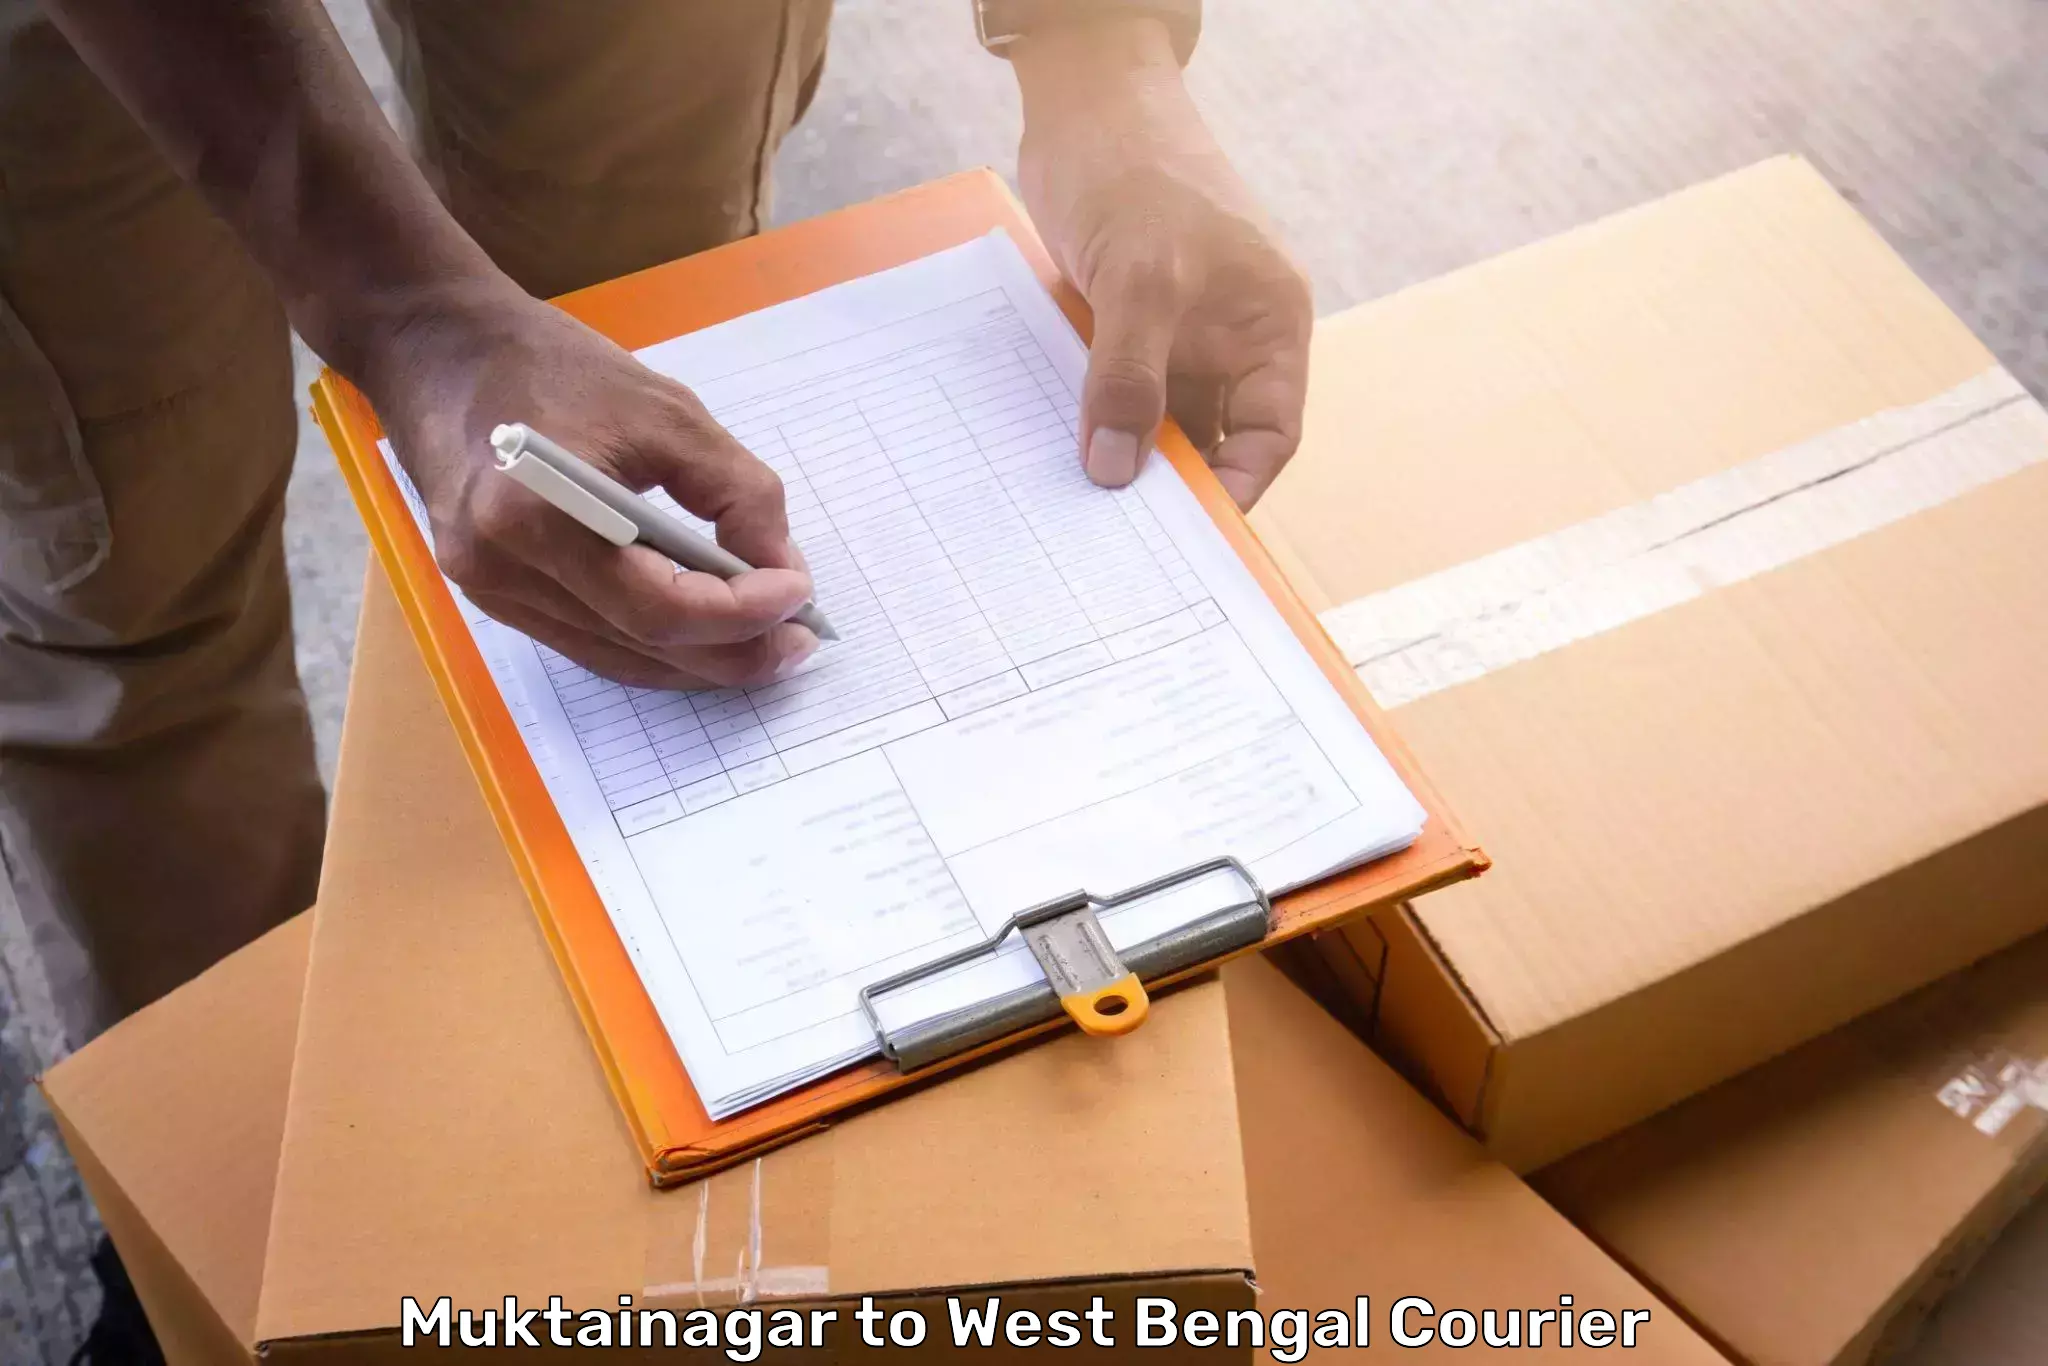 Urgent luggage shipment Muktainagar to Alipore